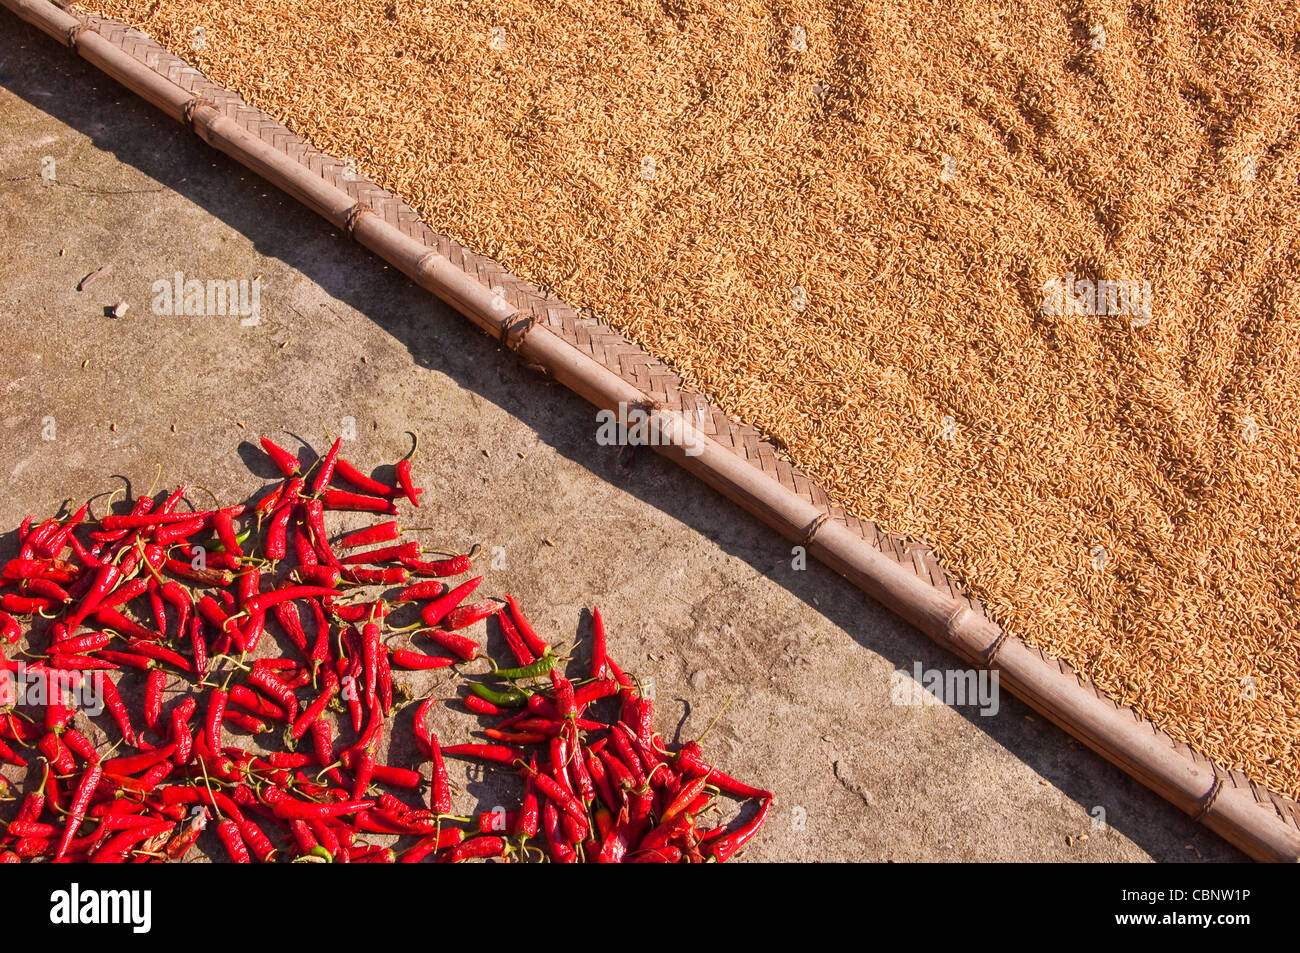 Reis und rote Chilis trocknen in der Sonne - Dorf Dazhai Provinz Guangxi (China) Stockfoto